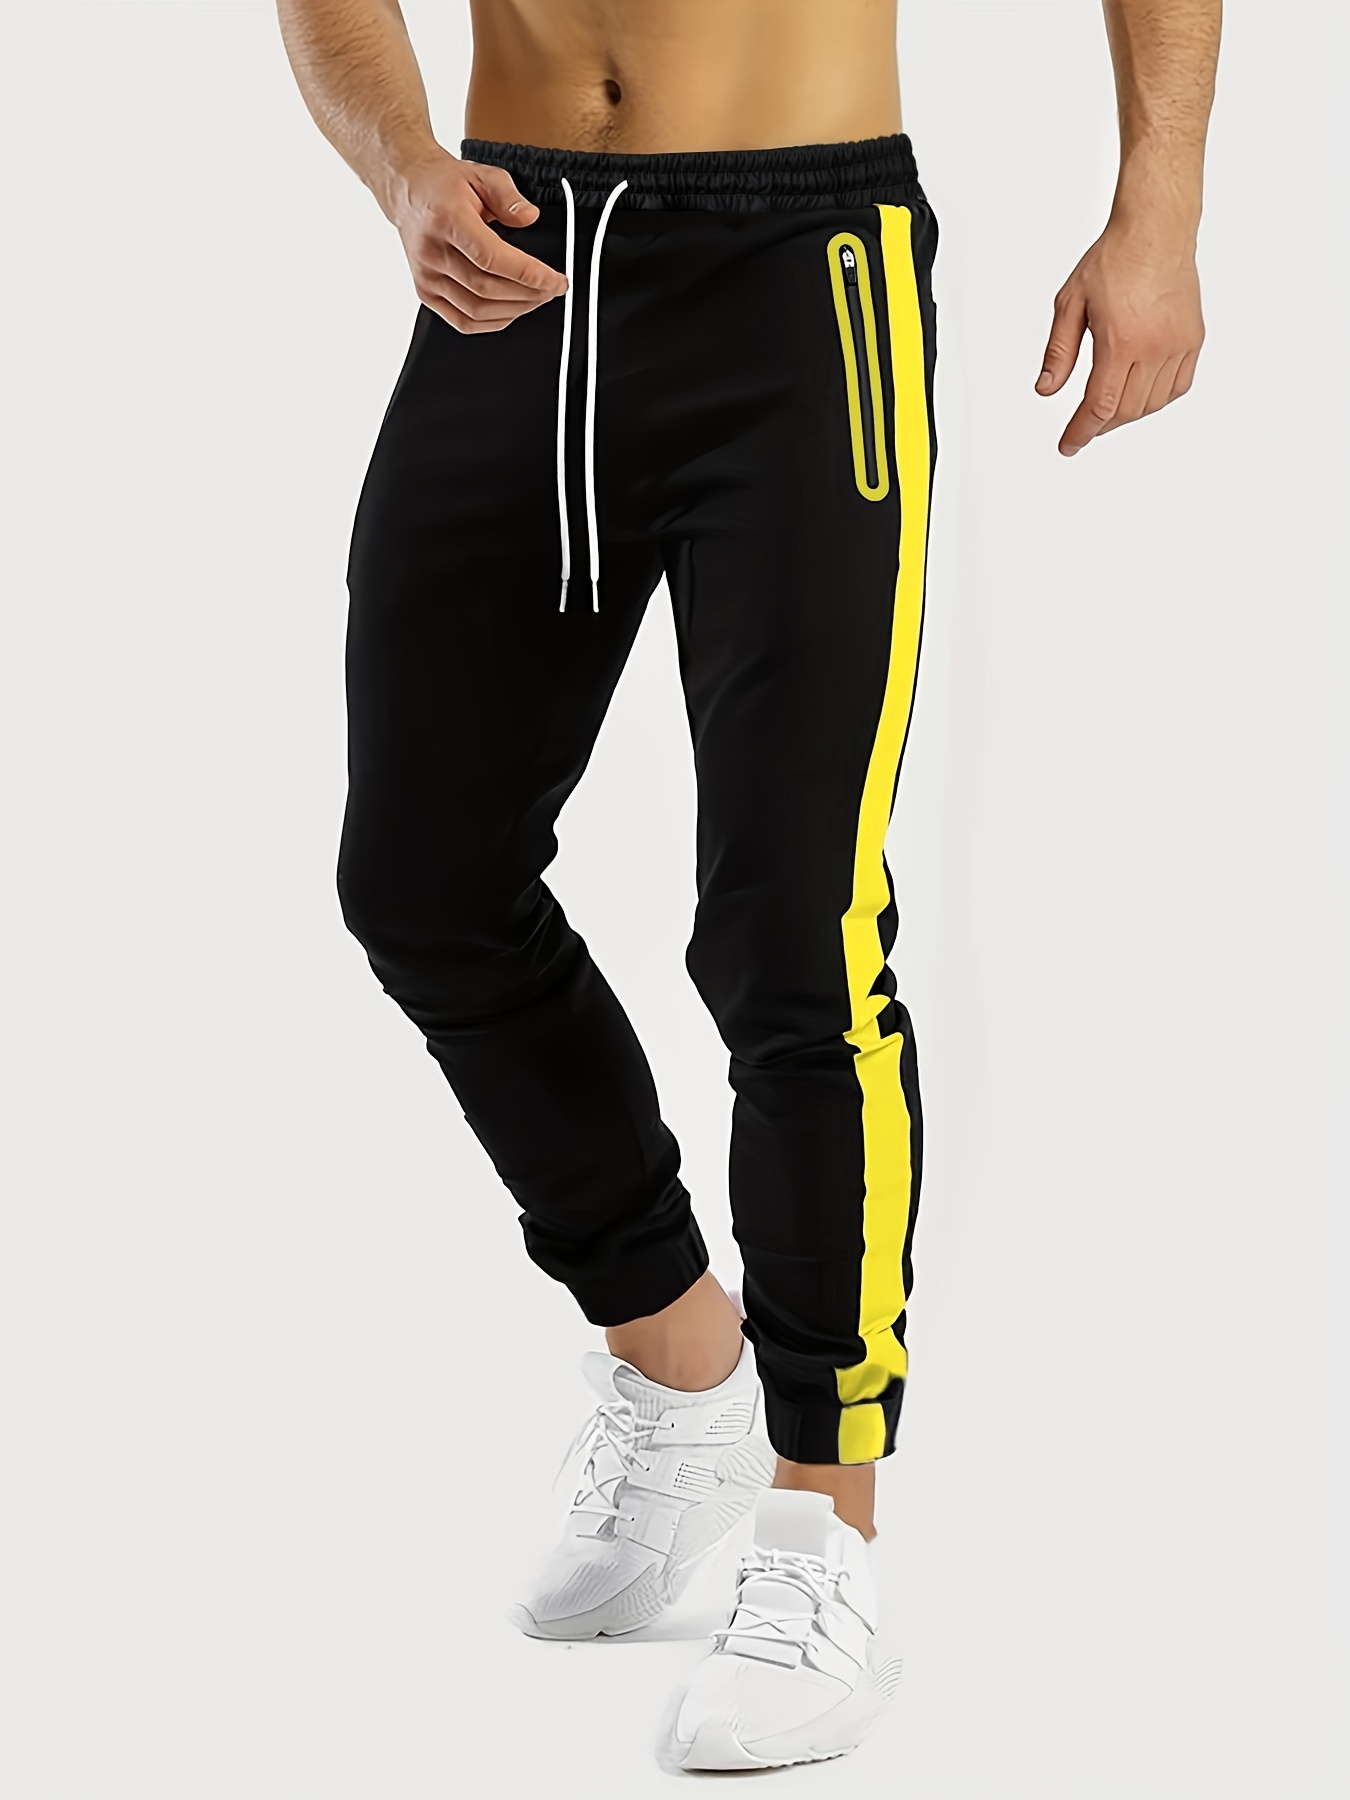 Plus Size Men's Contrast Color Jogging Pants Fashion Slim - Temu